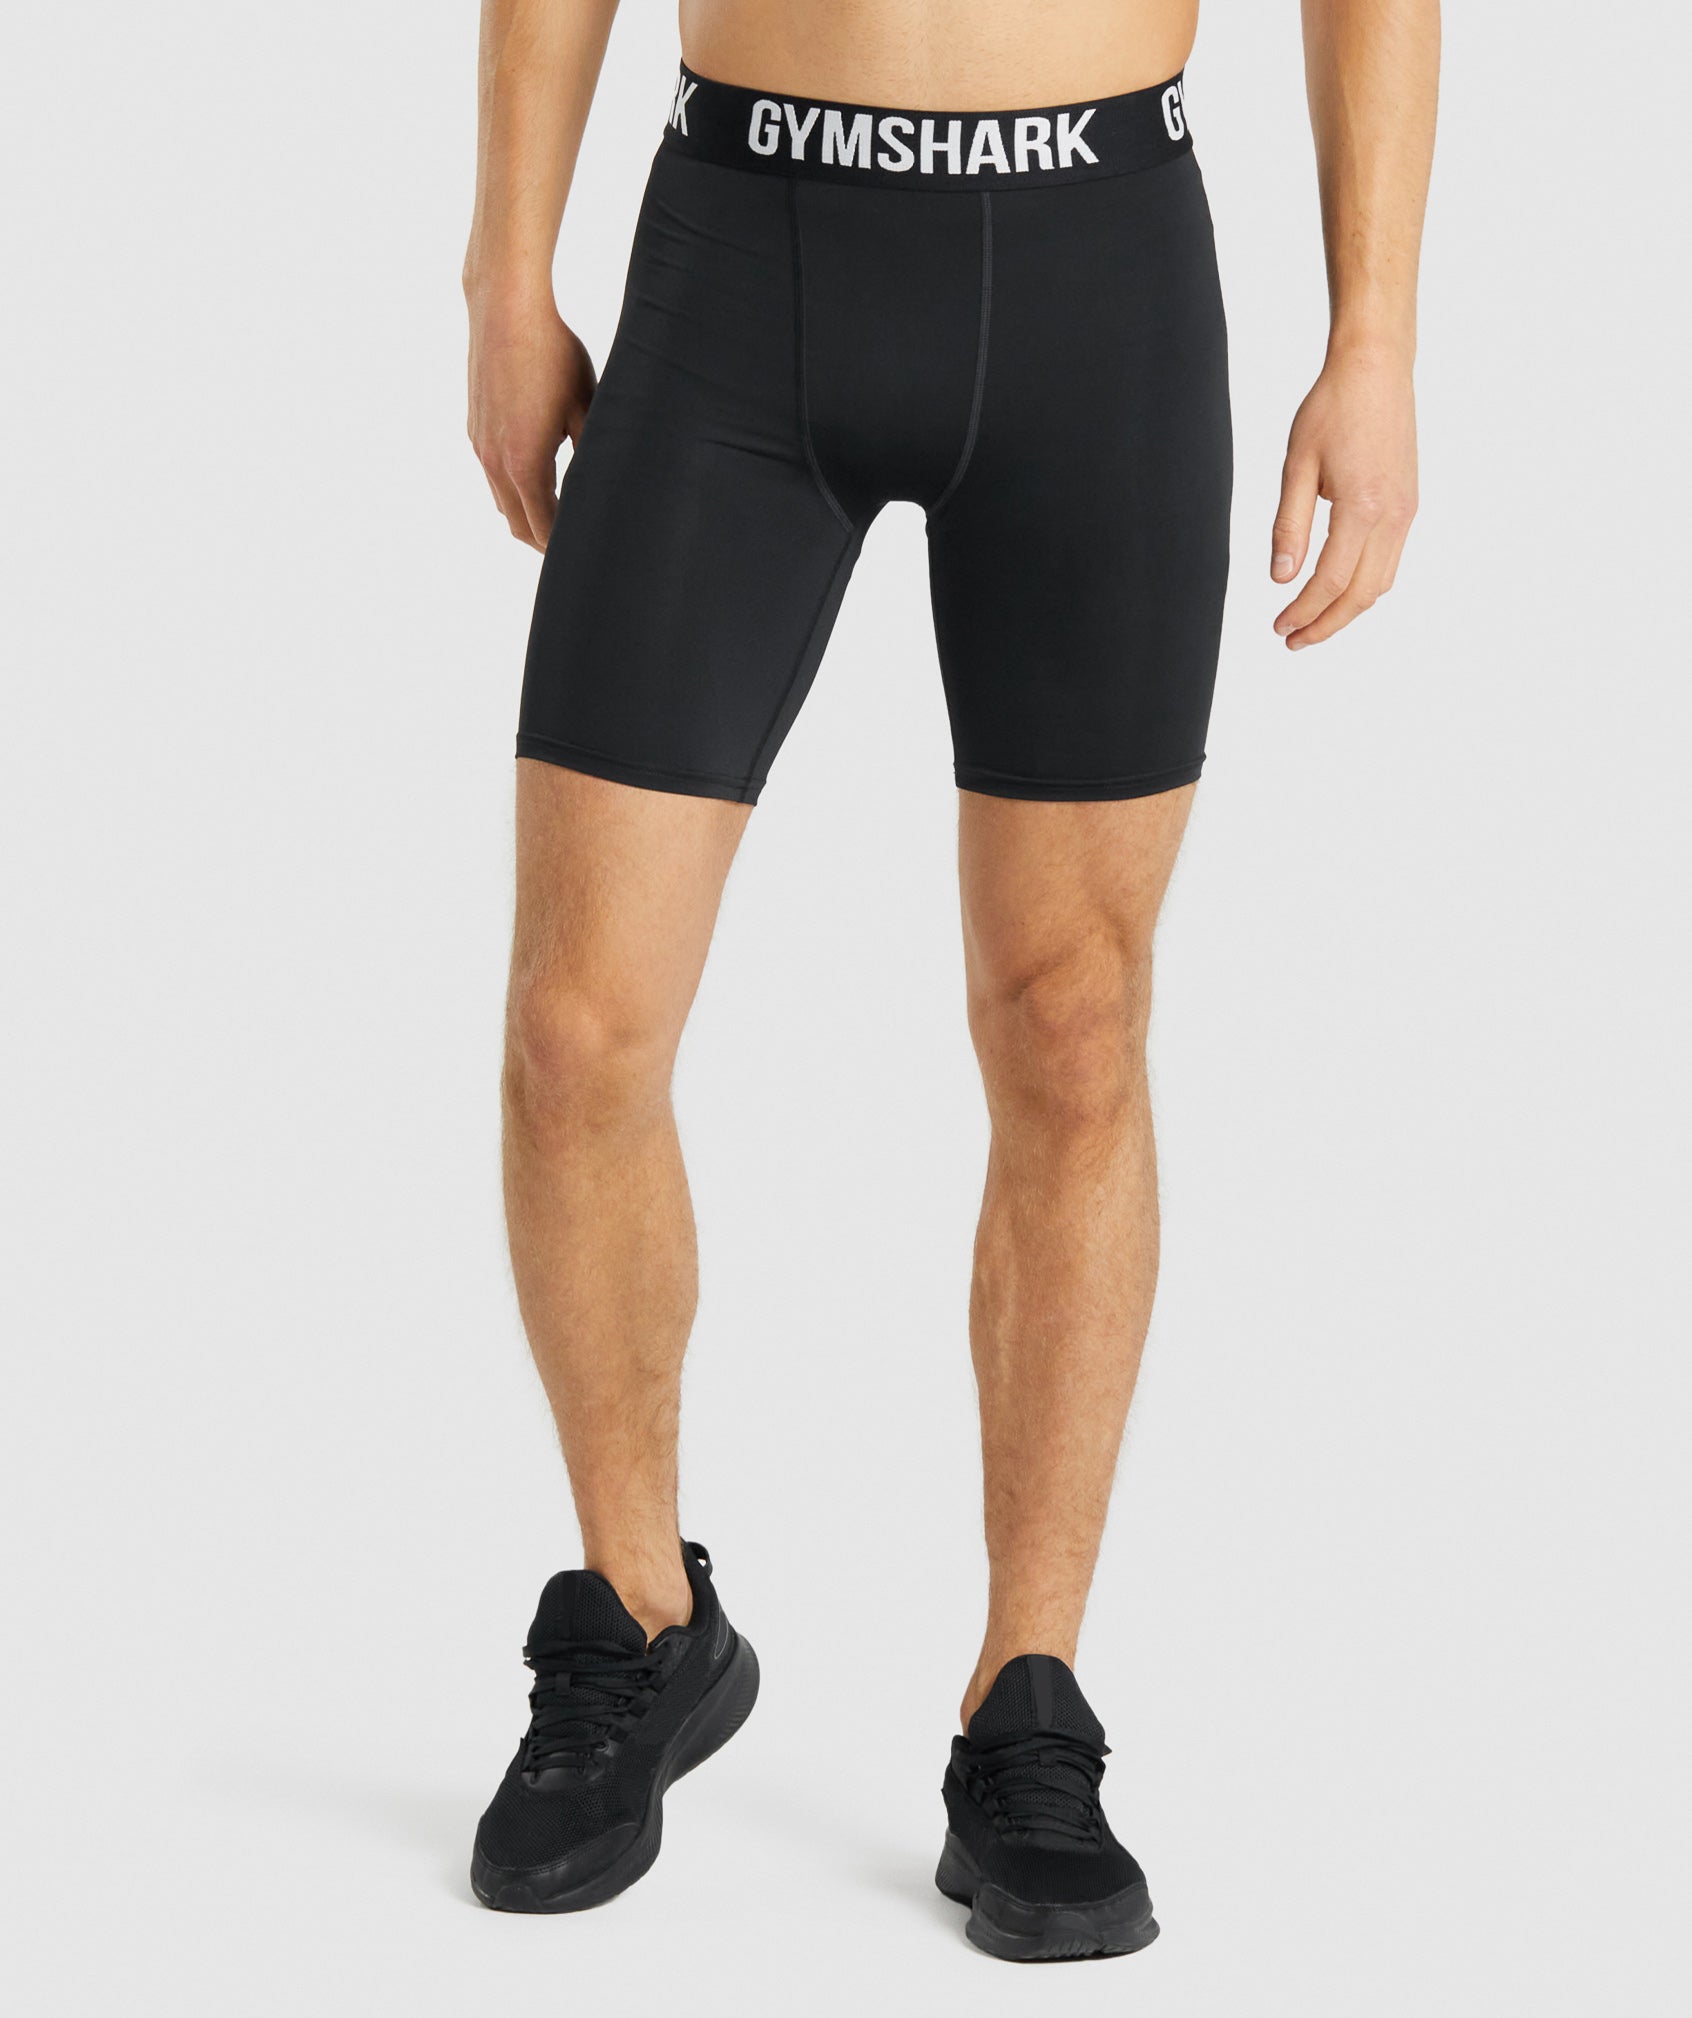 Apex Multi Shorts